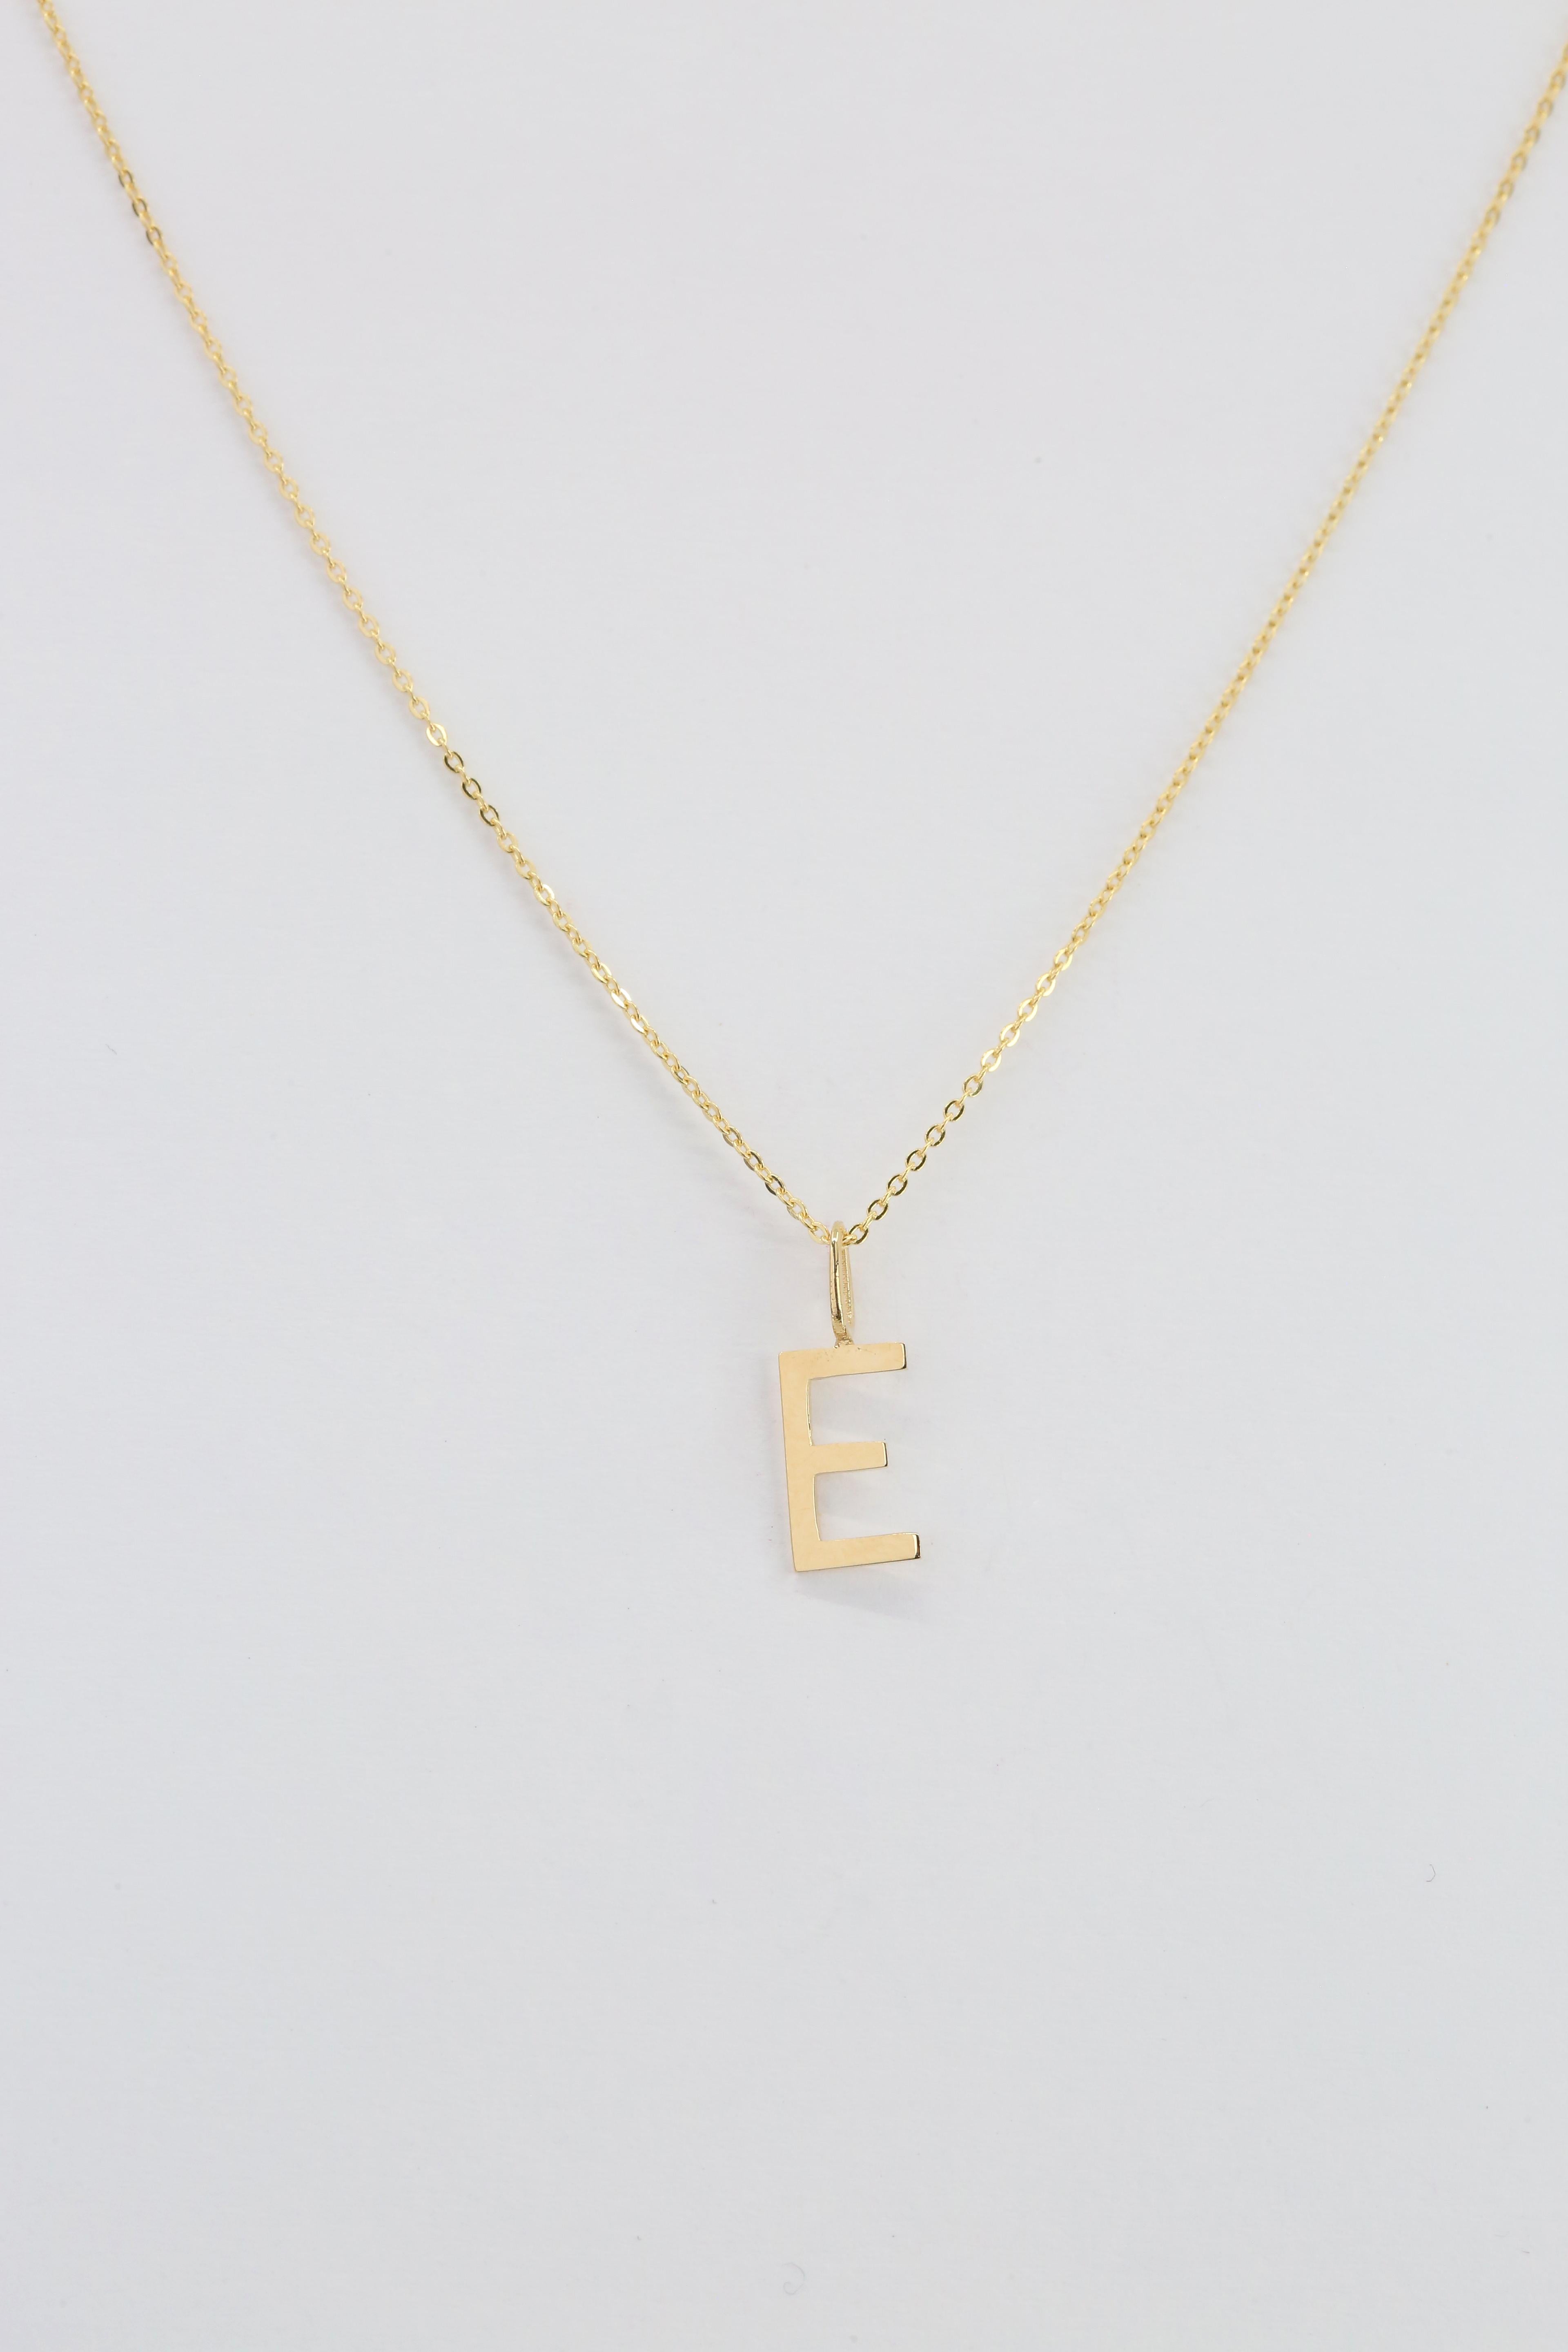 Modern 14k Gold Necklaces, Letter Necklace Models, Letter E Gold Necklace-Gift Necklace For Sale